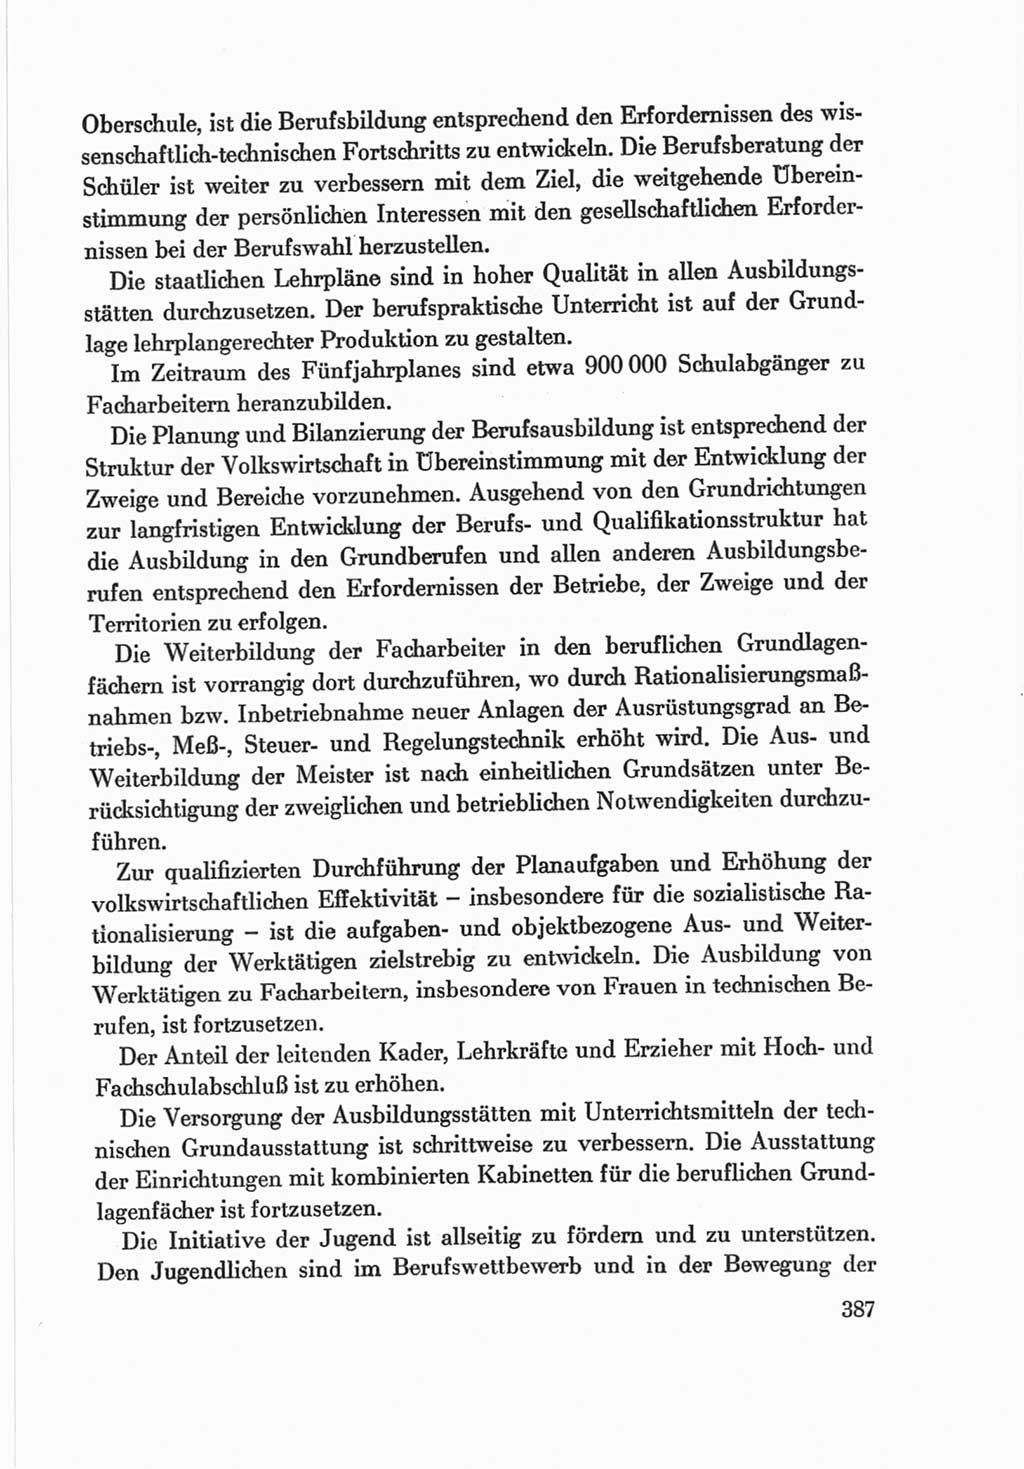 Protokoll der Verhandlungen des Ⅷ. Parteitages der Sozialistischen Einheitspartei Deutschlands (SED) [Deutsche Demokratische Republik (DDR)] 1971, Band 2, Seite 387 (Prot. Verh. Ⅷ. PT SED DDR 1971, Bd. 2, S. 387)